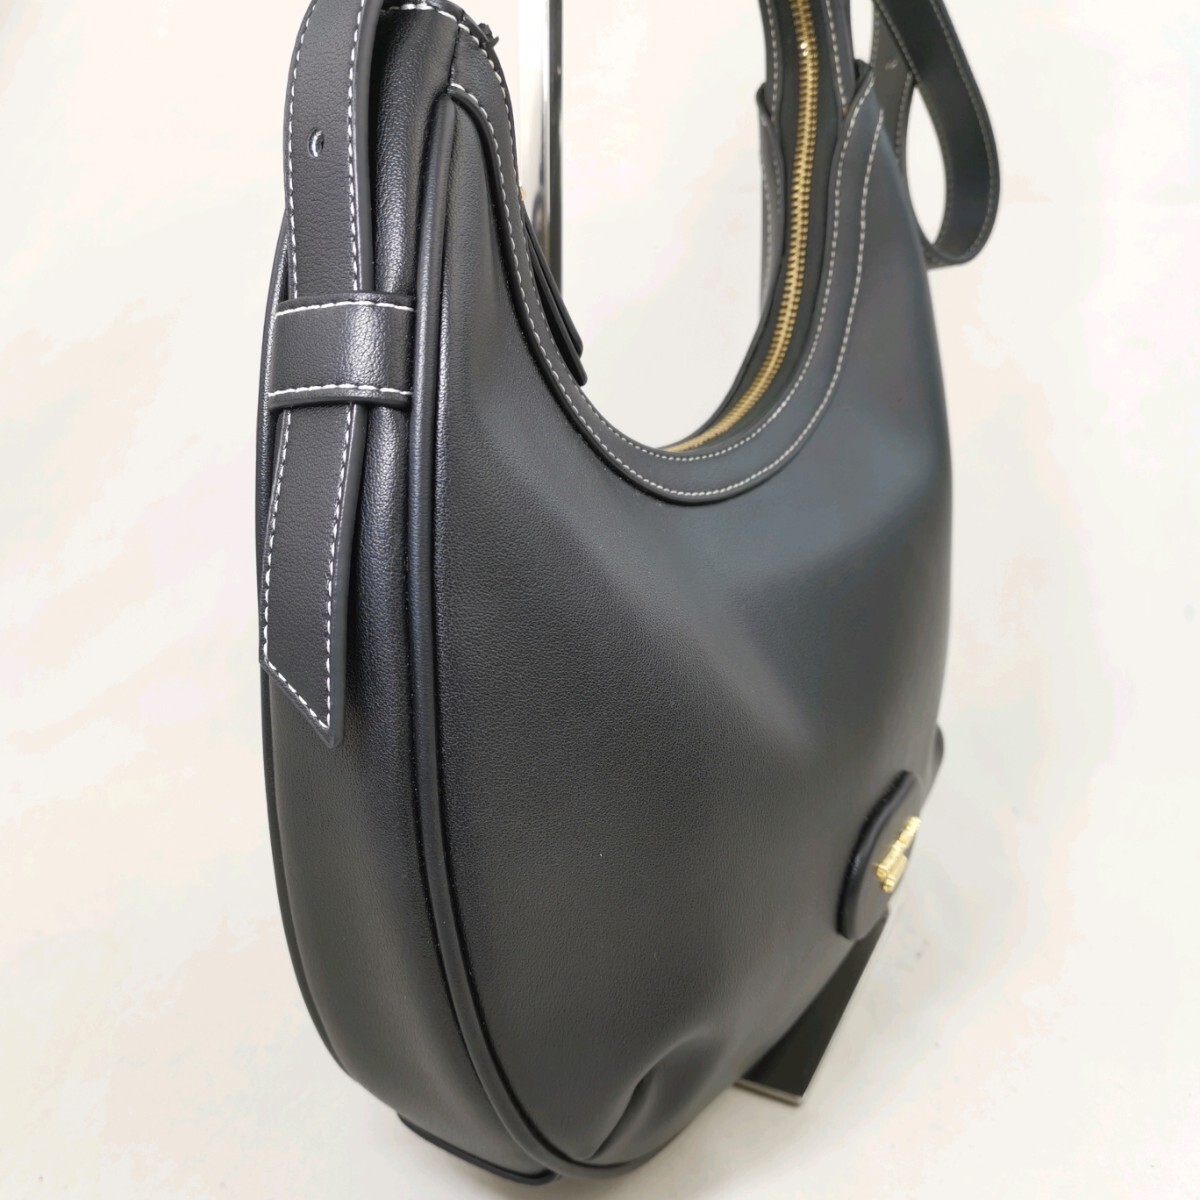 M #【商品ランク:B】 サマンサタバサ Samantha Thavasa ロゴメタル レザー セミショルダー 肩掛け トートバッグ 婦人鞄 ブラック系の画像3